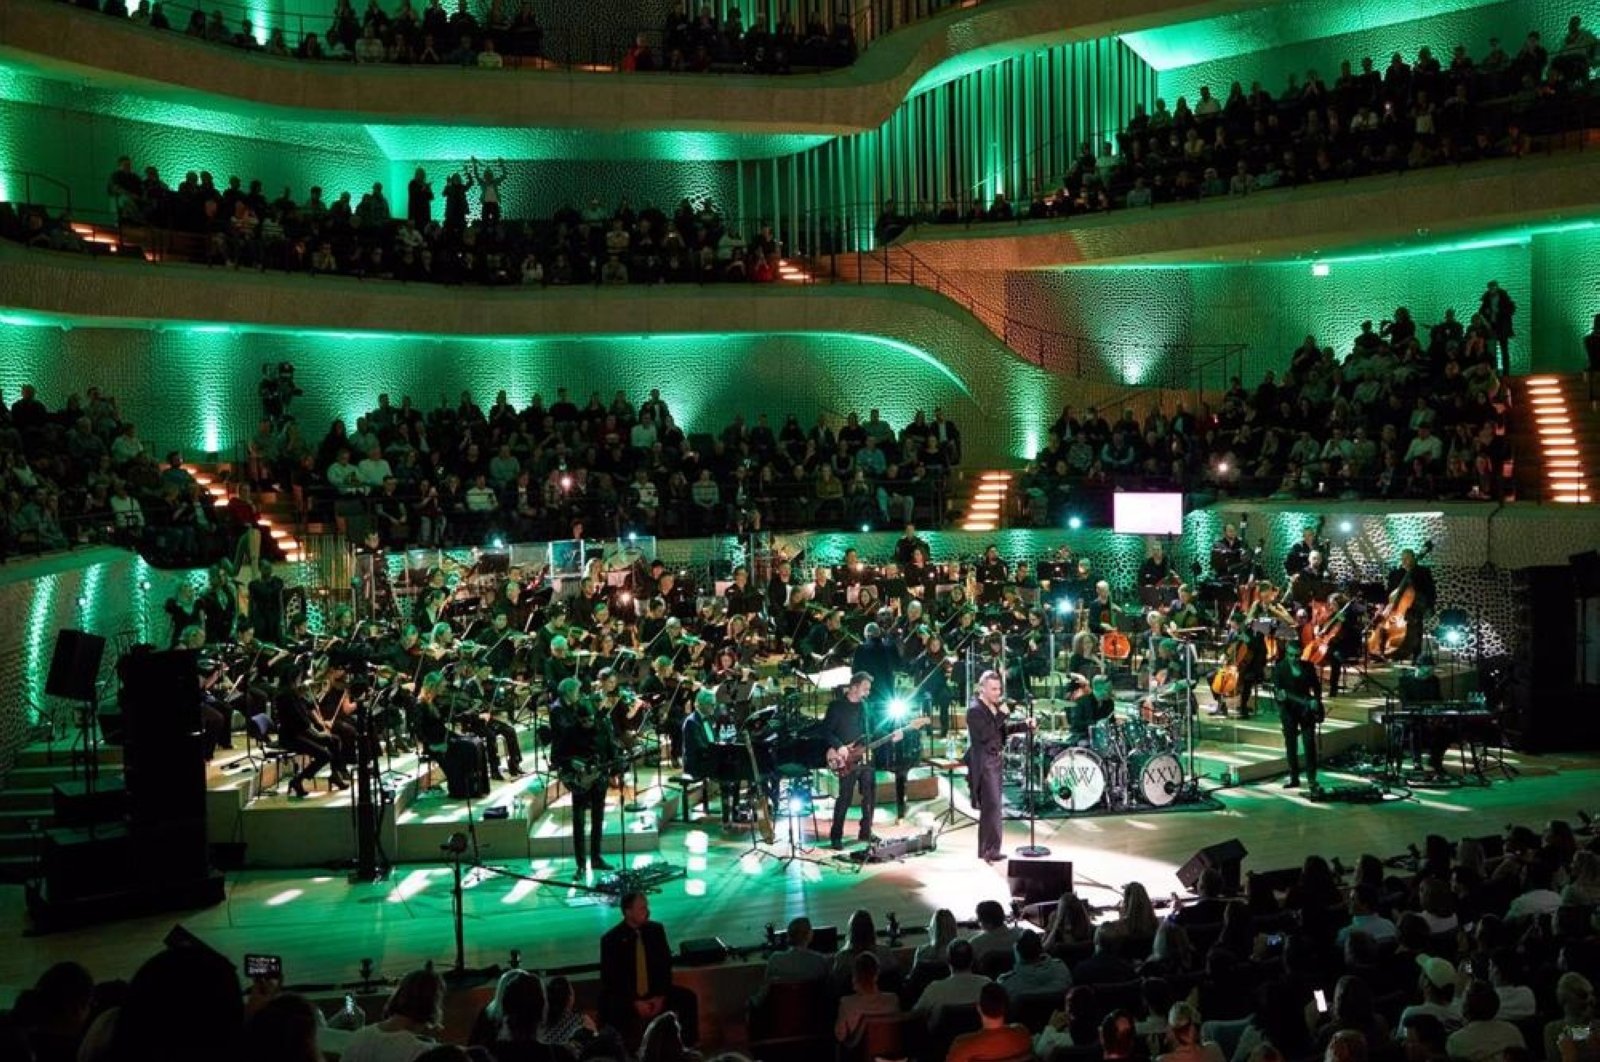 Badhoven: Aktivis iklim menargetkan konser di Hamburg philharmonic